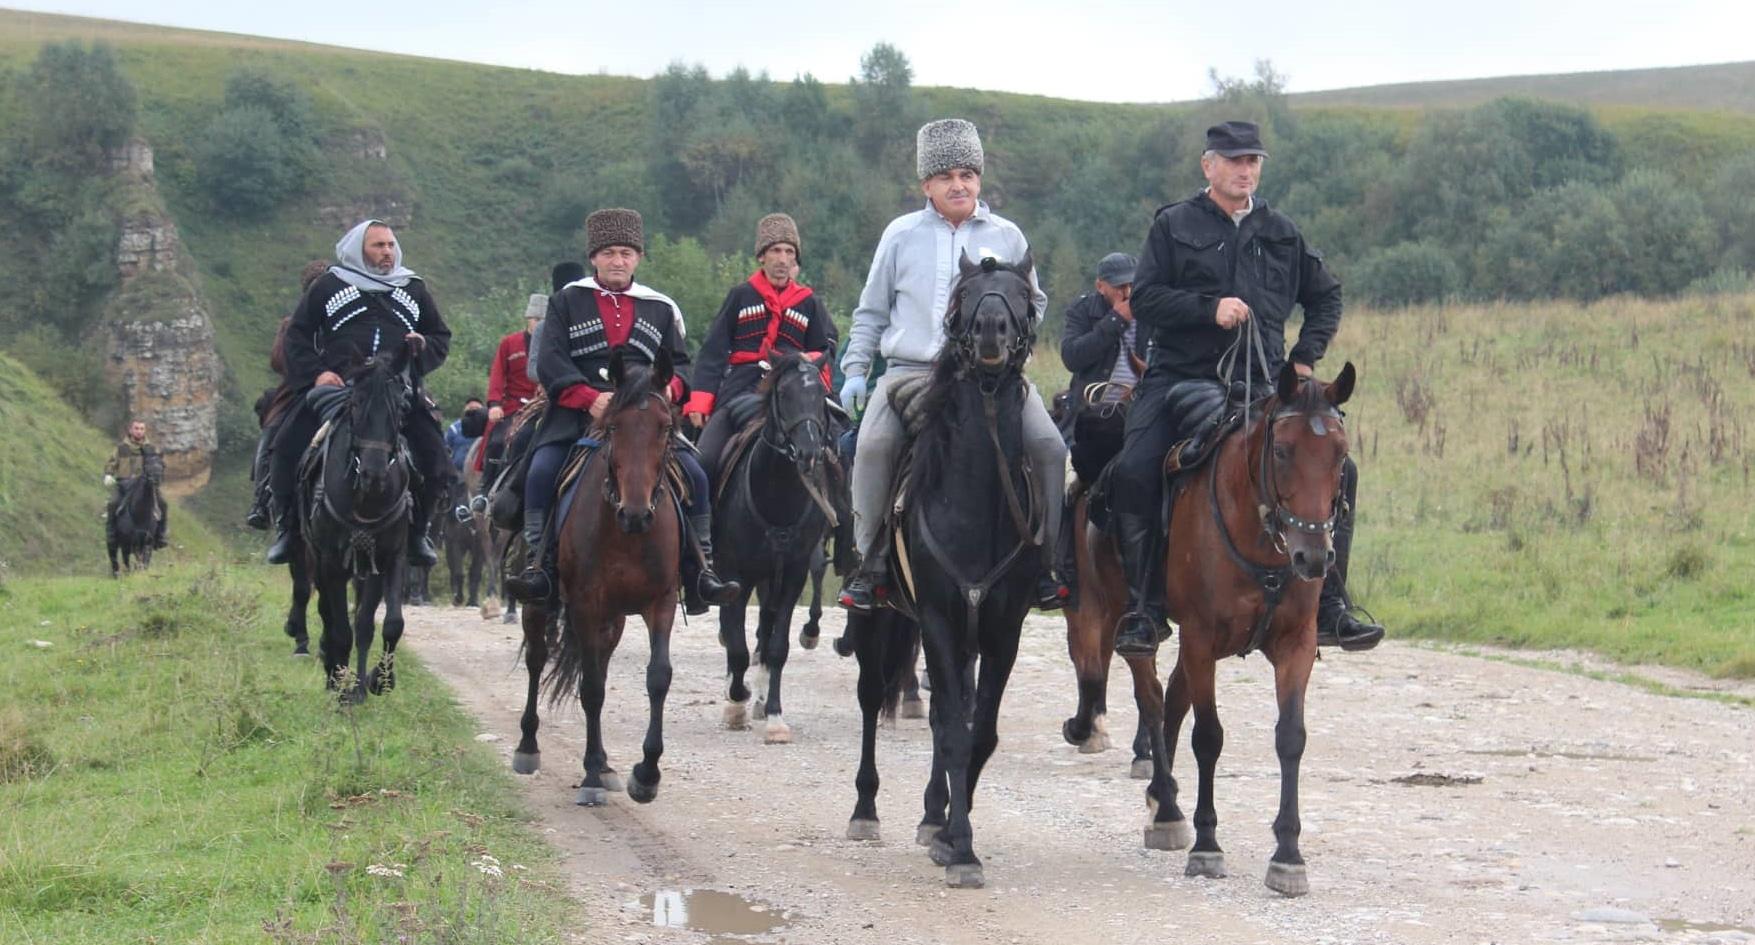 Участники конного перехода в октябре 2018 года. Автор фото: Валерий Сокуров